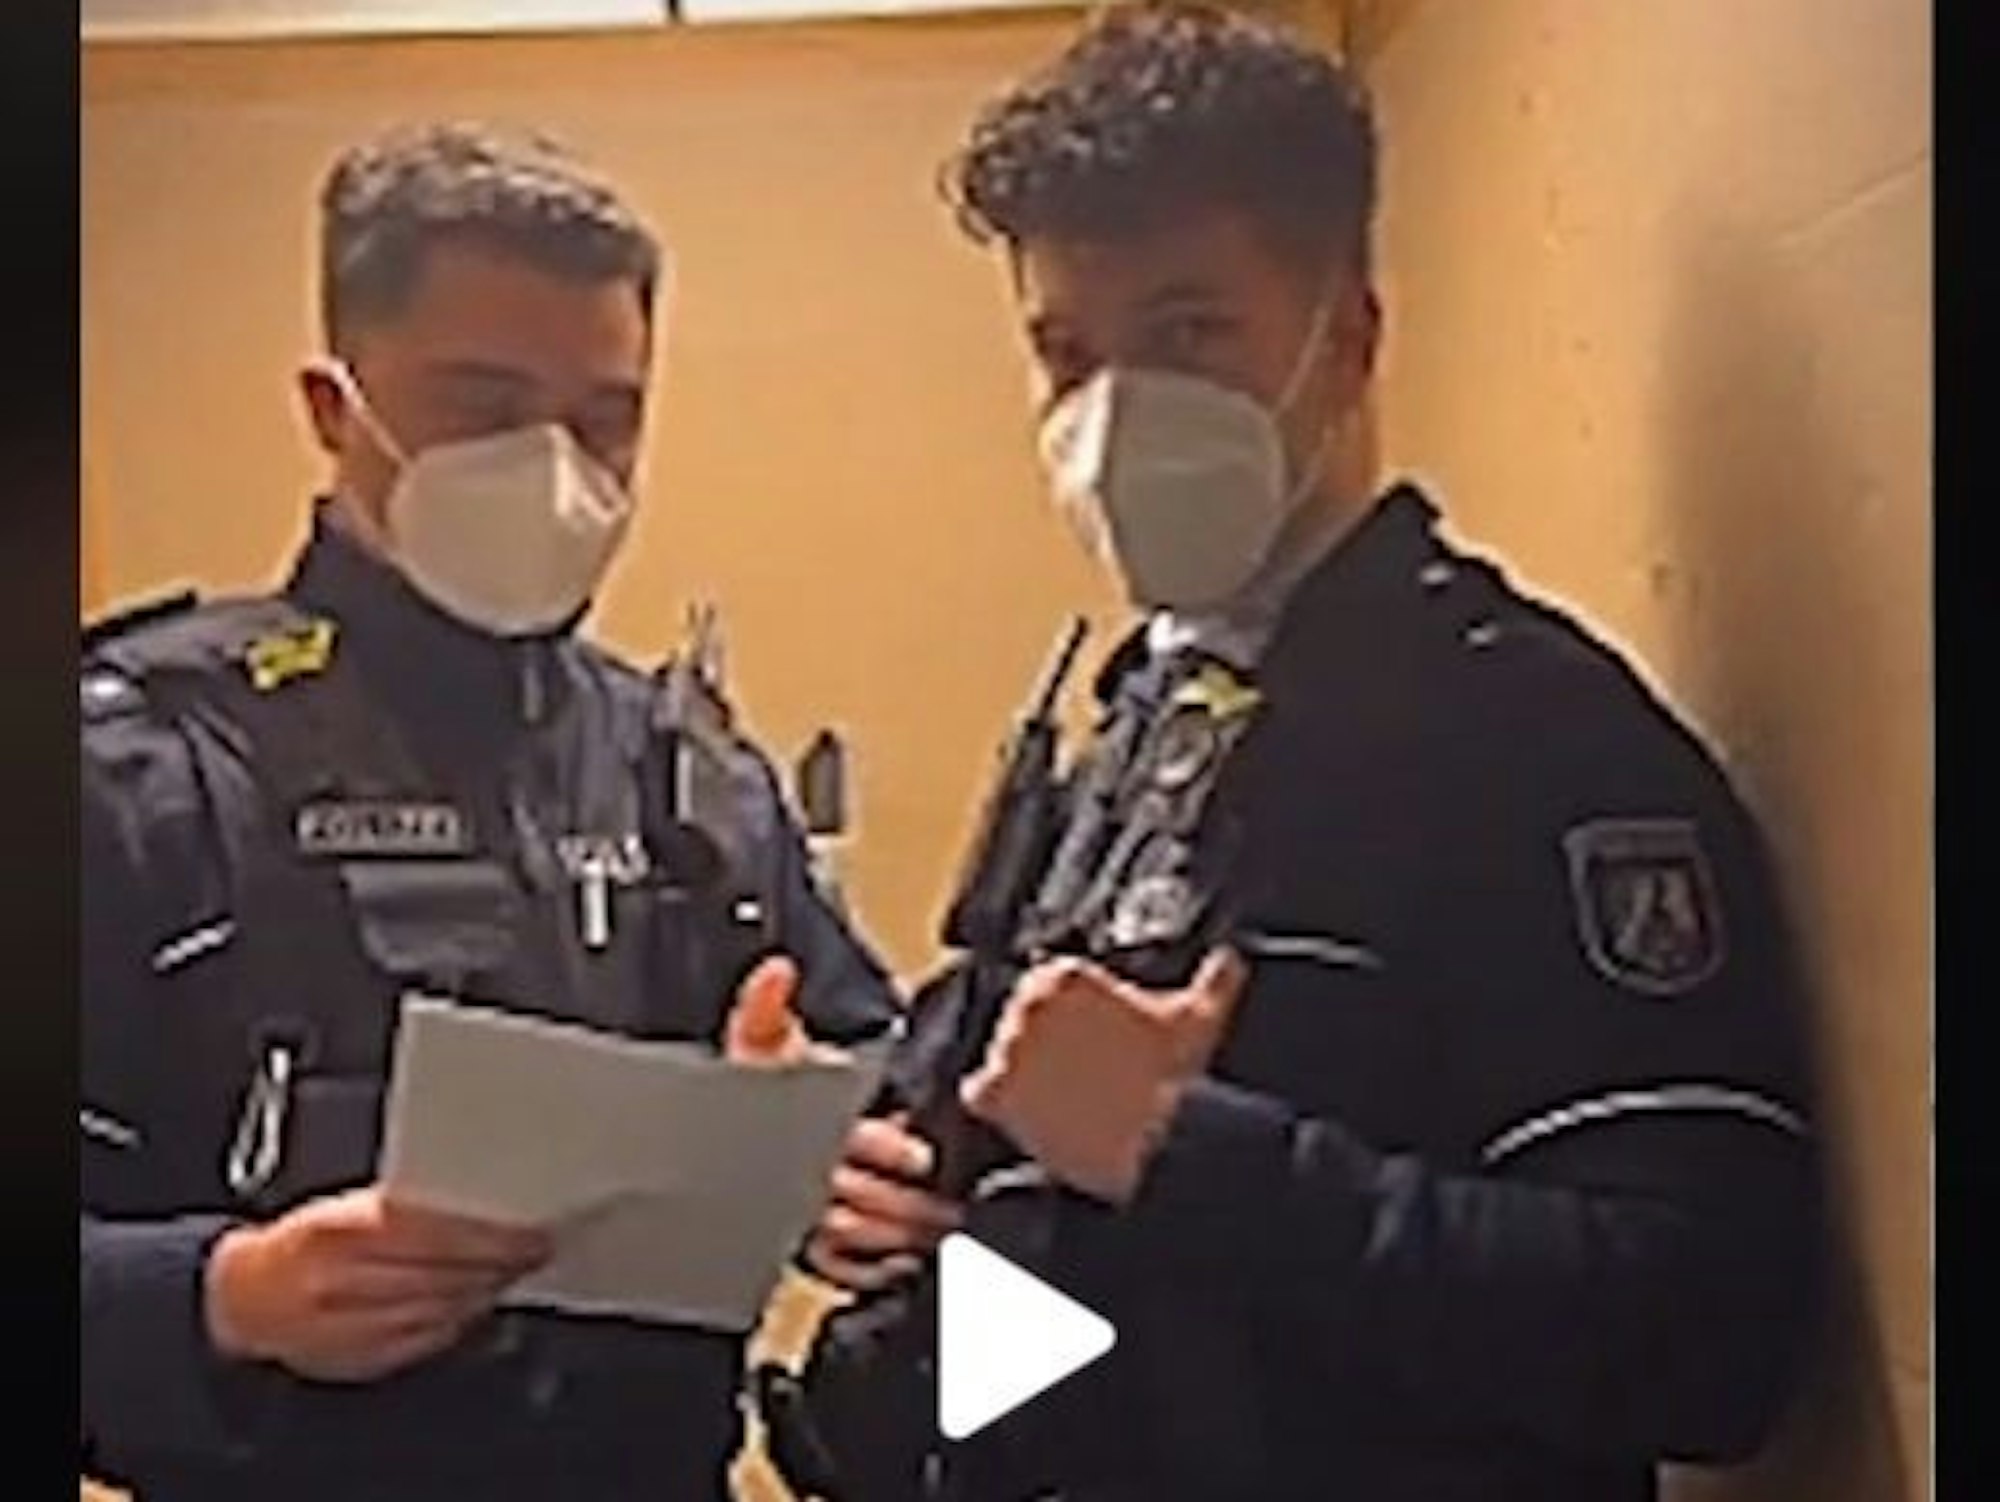 Zwei junge Polizisten stehen in einem Fahrstuhl, der linke hat Unterlagen in der Hand.